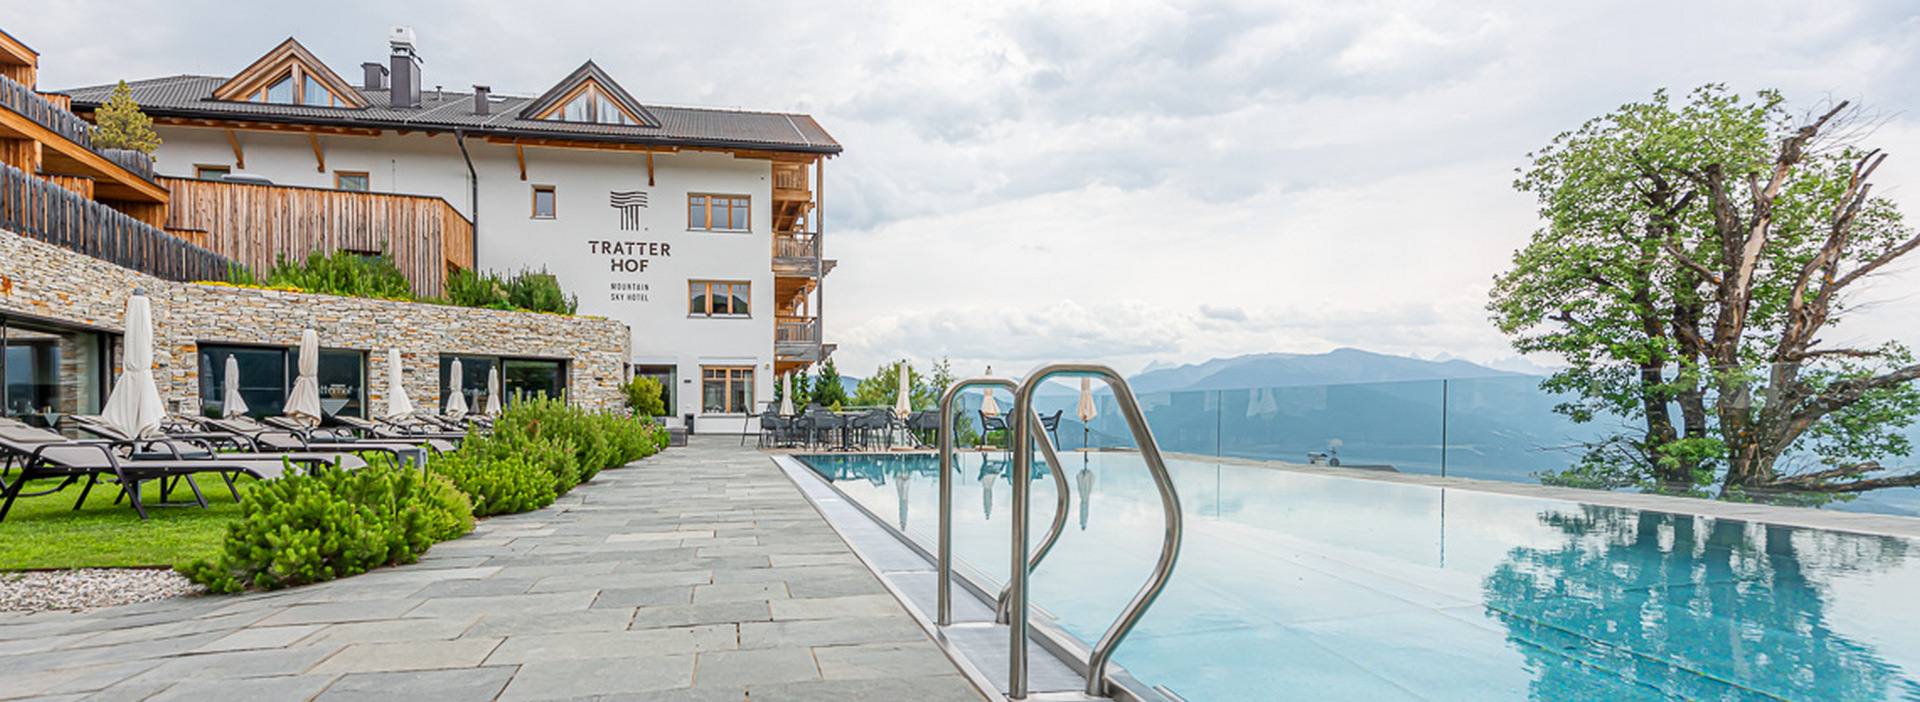 Tratterhof - Mountain Sky Hotel